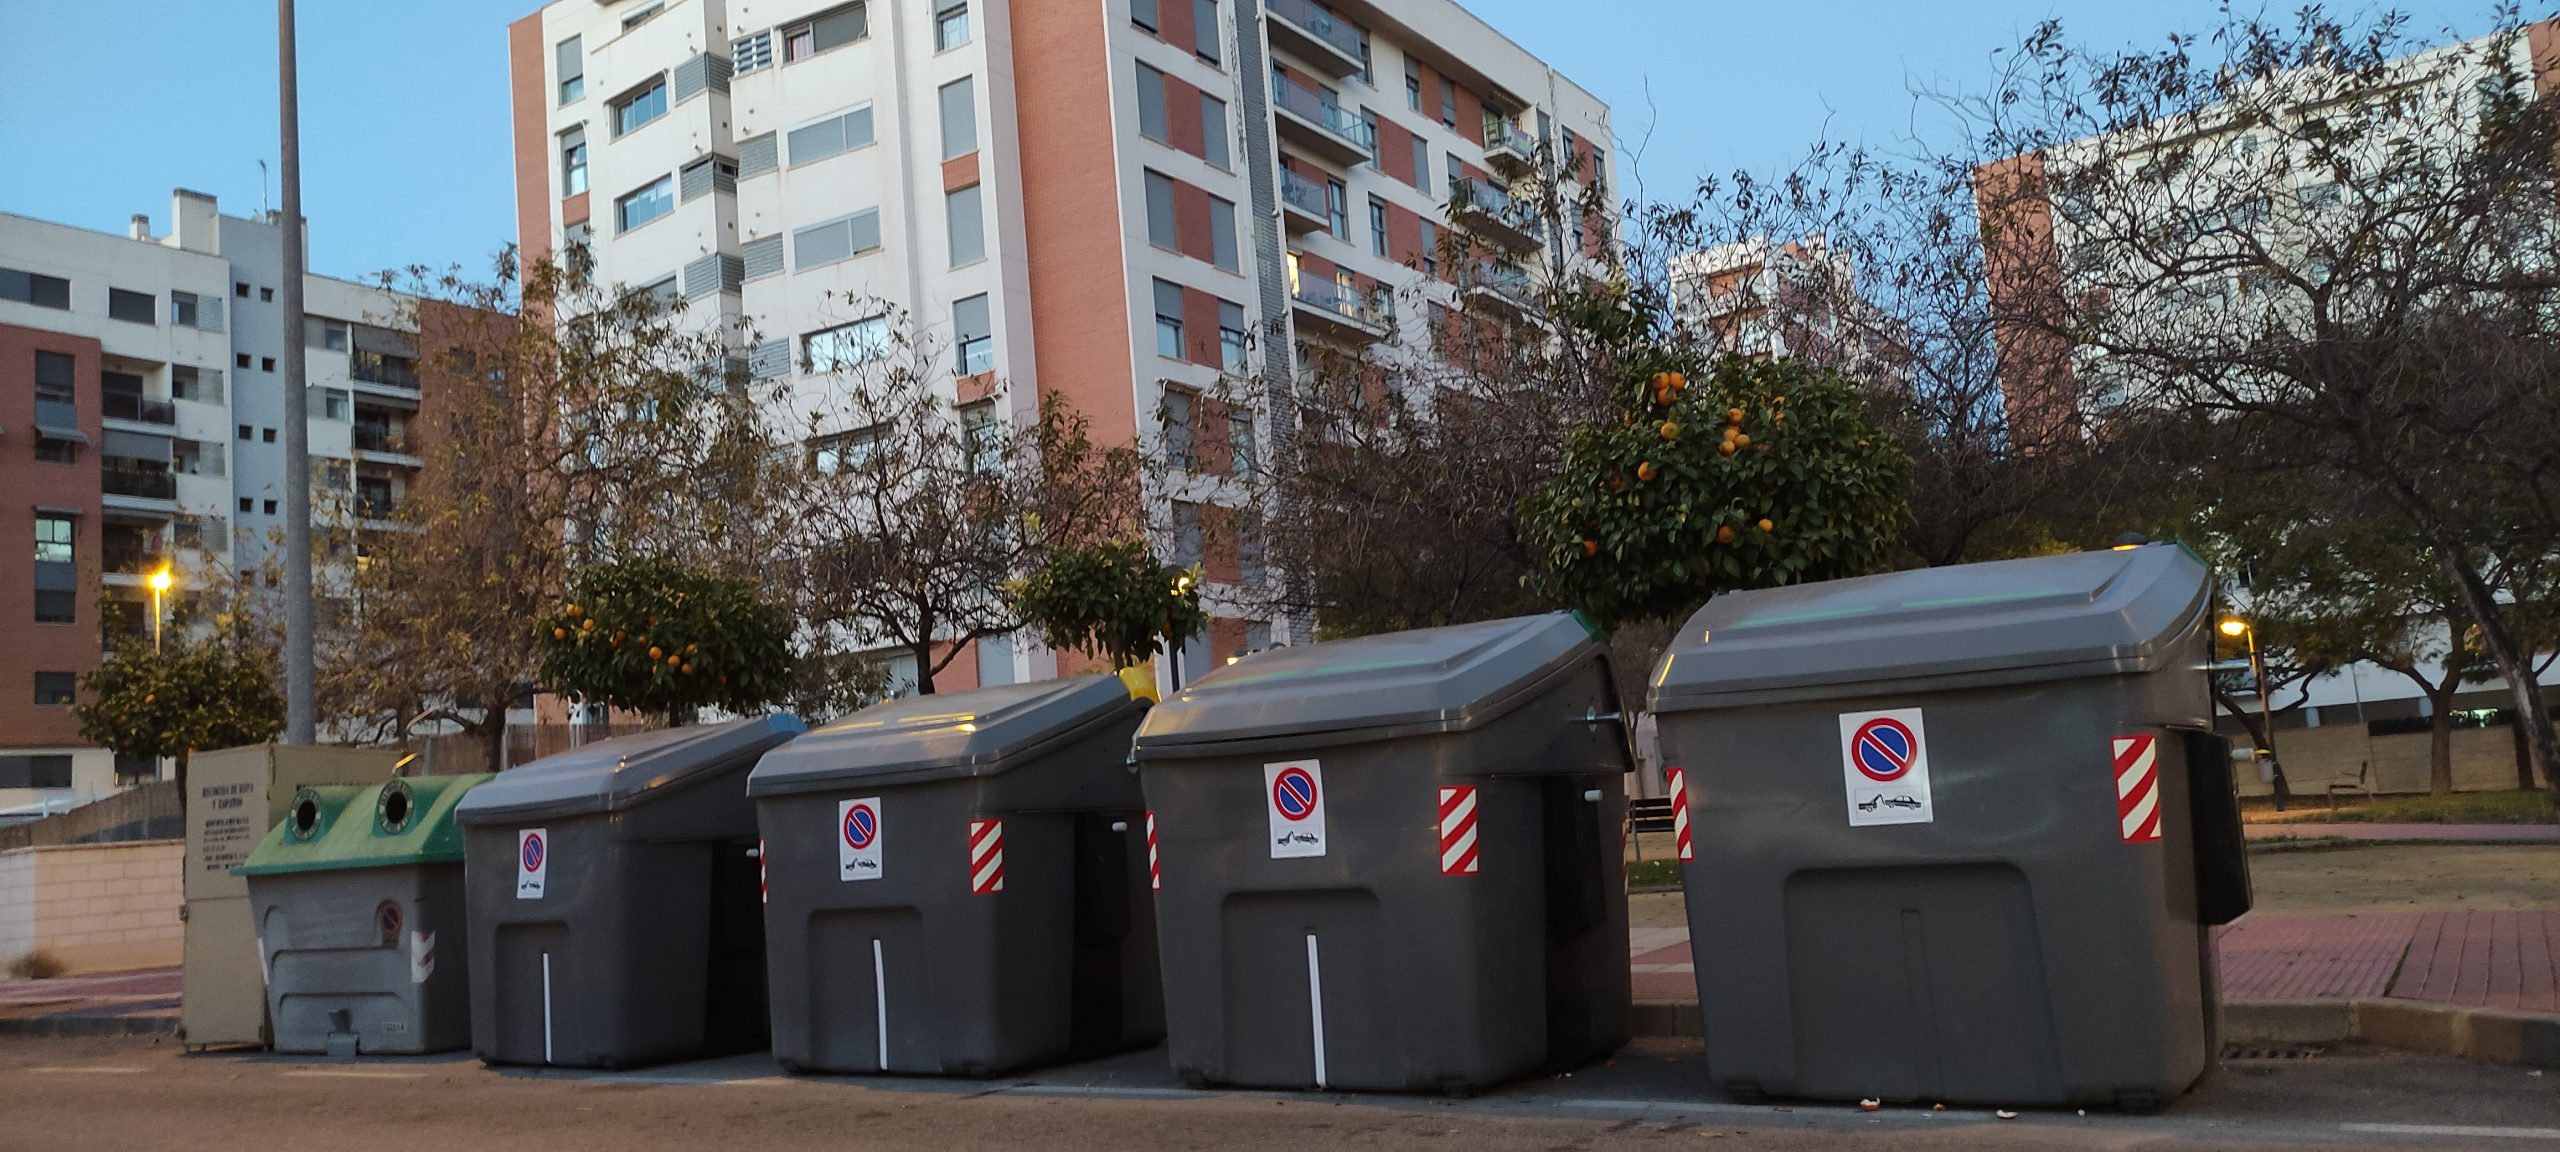 2022-01-13 Nuevo contenedor de residuos en calle Poeta Eloy Sánchez Rosillo de Joven Futura